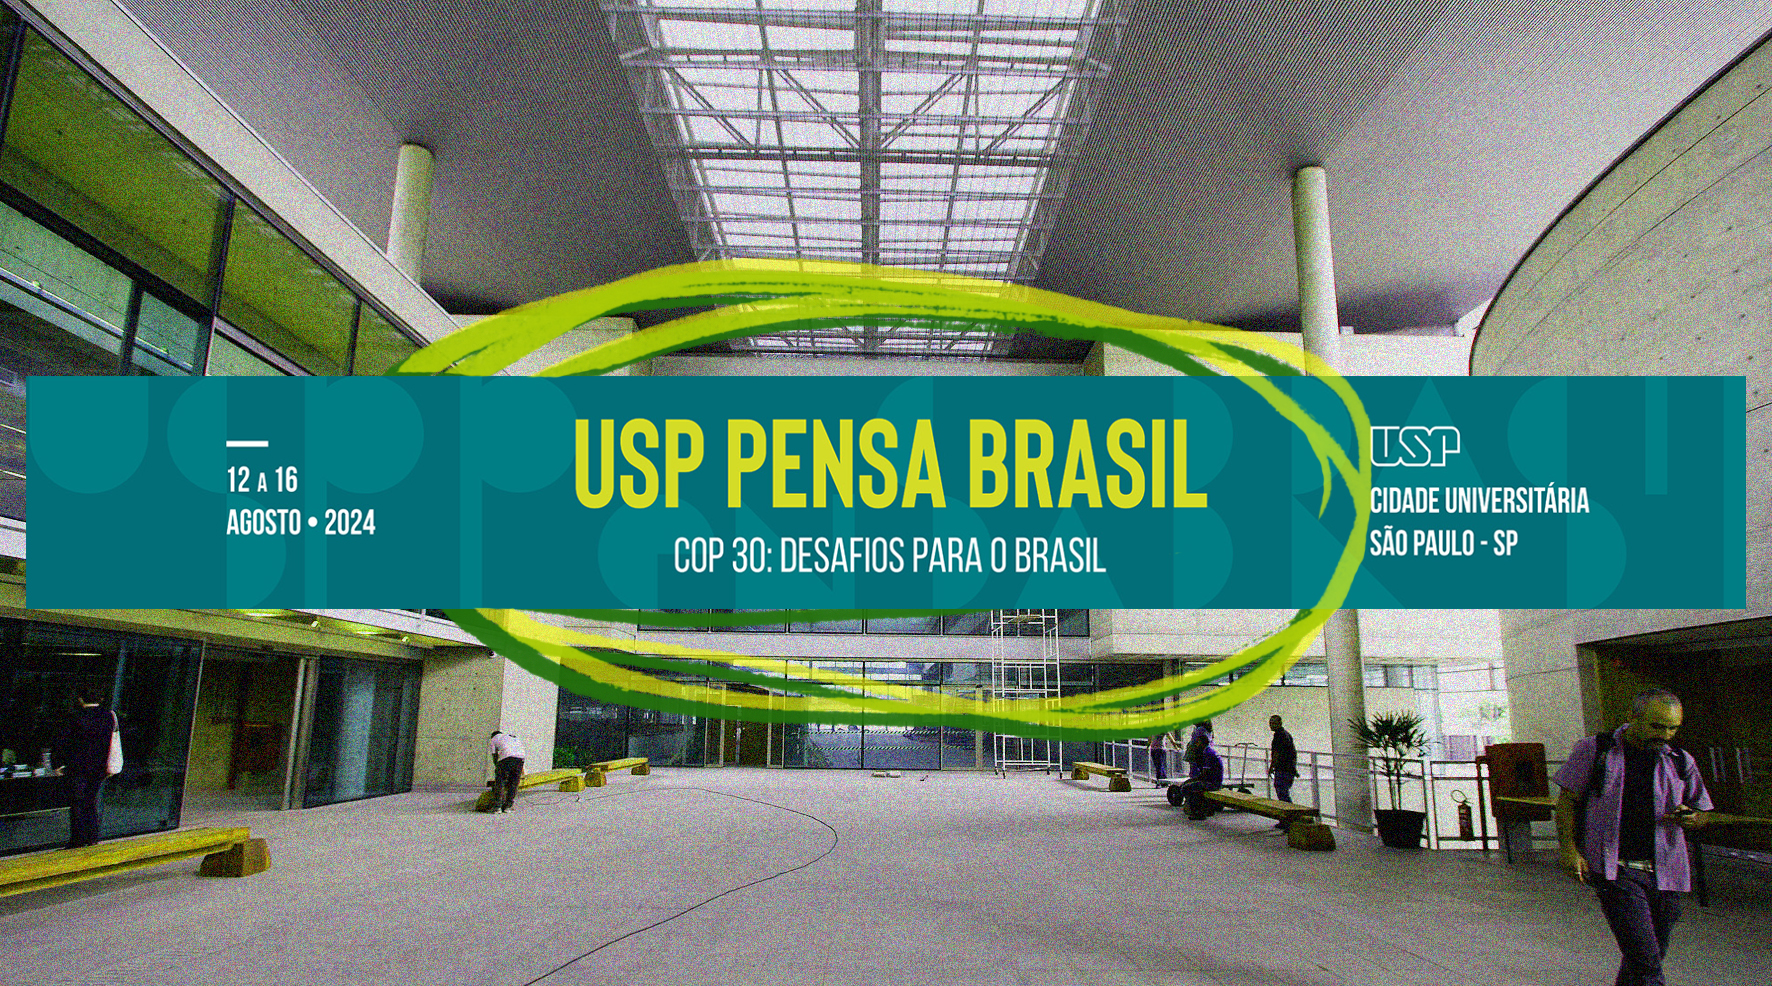 Fotomontagem feita por Brenda Kappsobre imagens de: USP/Marcos Santos e USP Pensa Brasil